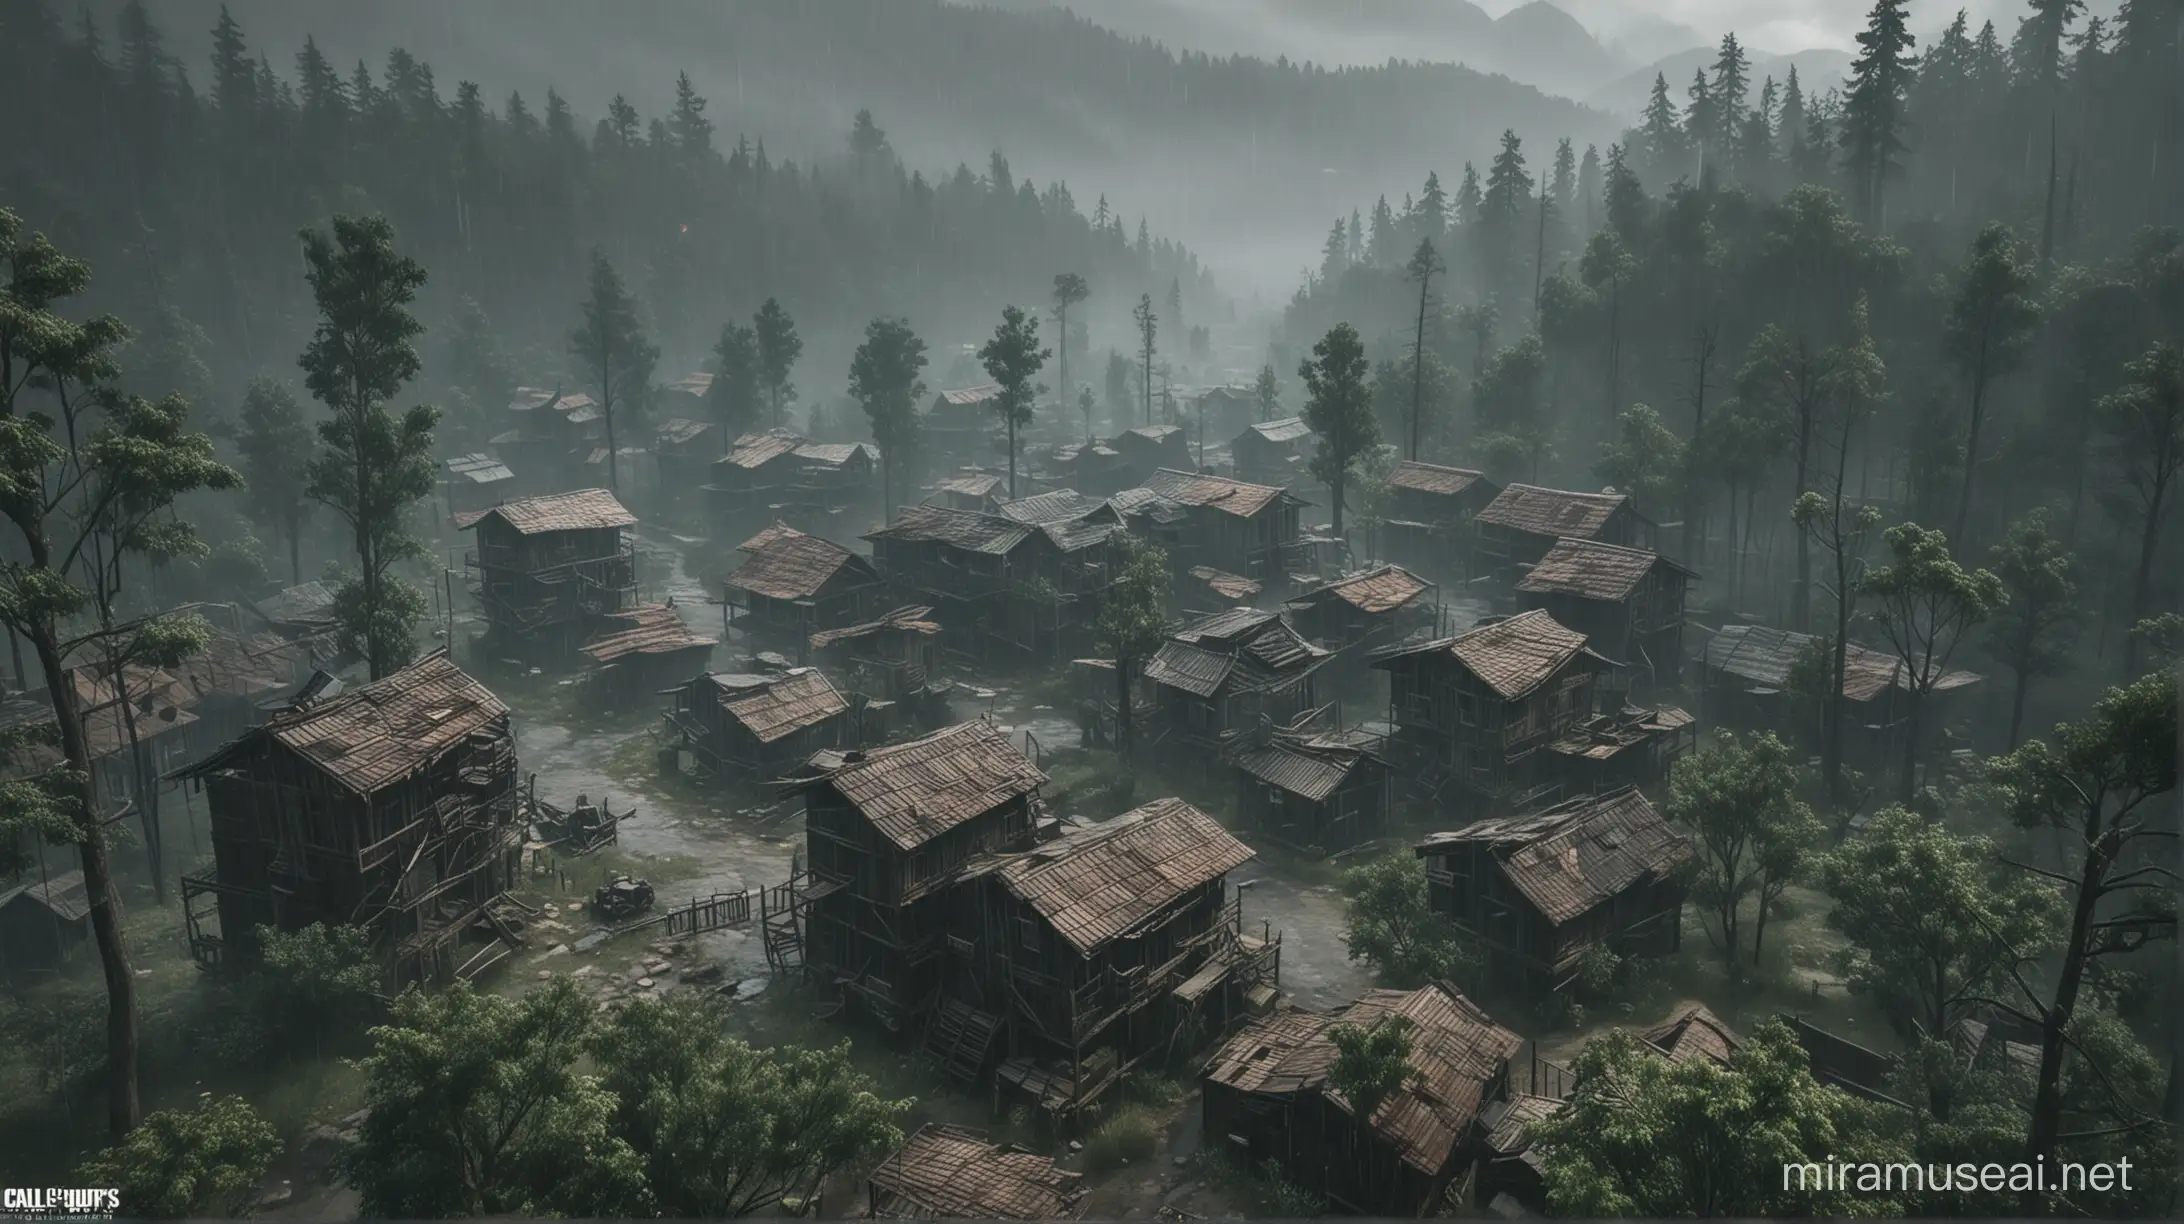 Génère moi une image dans le style du mode zombie de Call Of Duty Black Ops :
Dans une map située dans une forêt, il y à une brume et de la pluie pesante il y à une Ville abandoné avec des Maisons en bois. On à une vue de haut sur l’ensemble de la Map.
